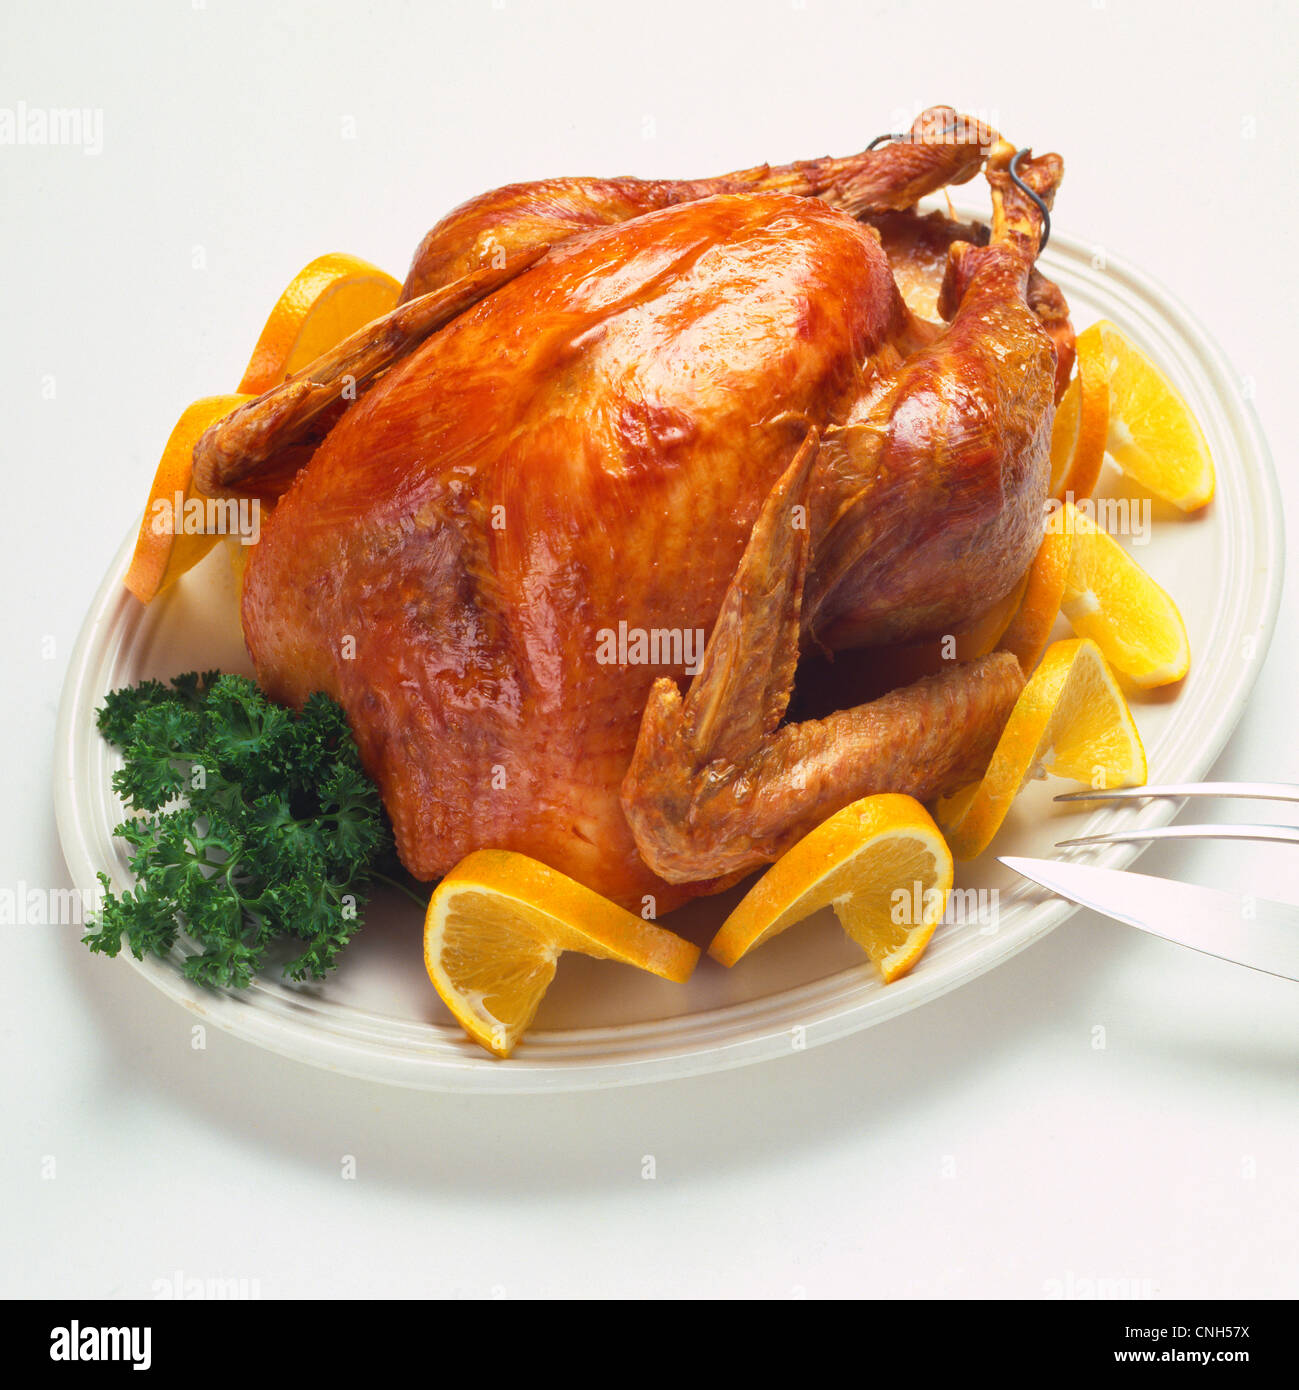 roast turkey garnished with orange slices and parsley on platter Stock Photo